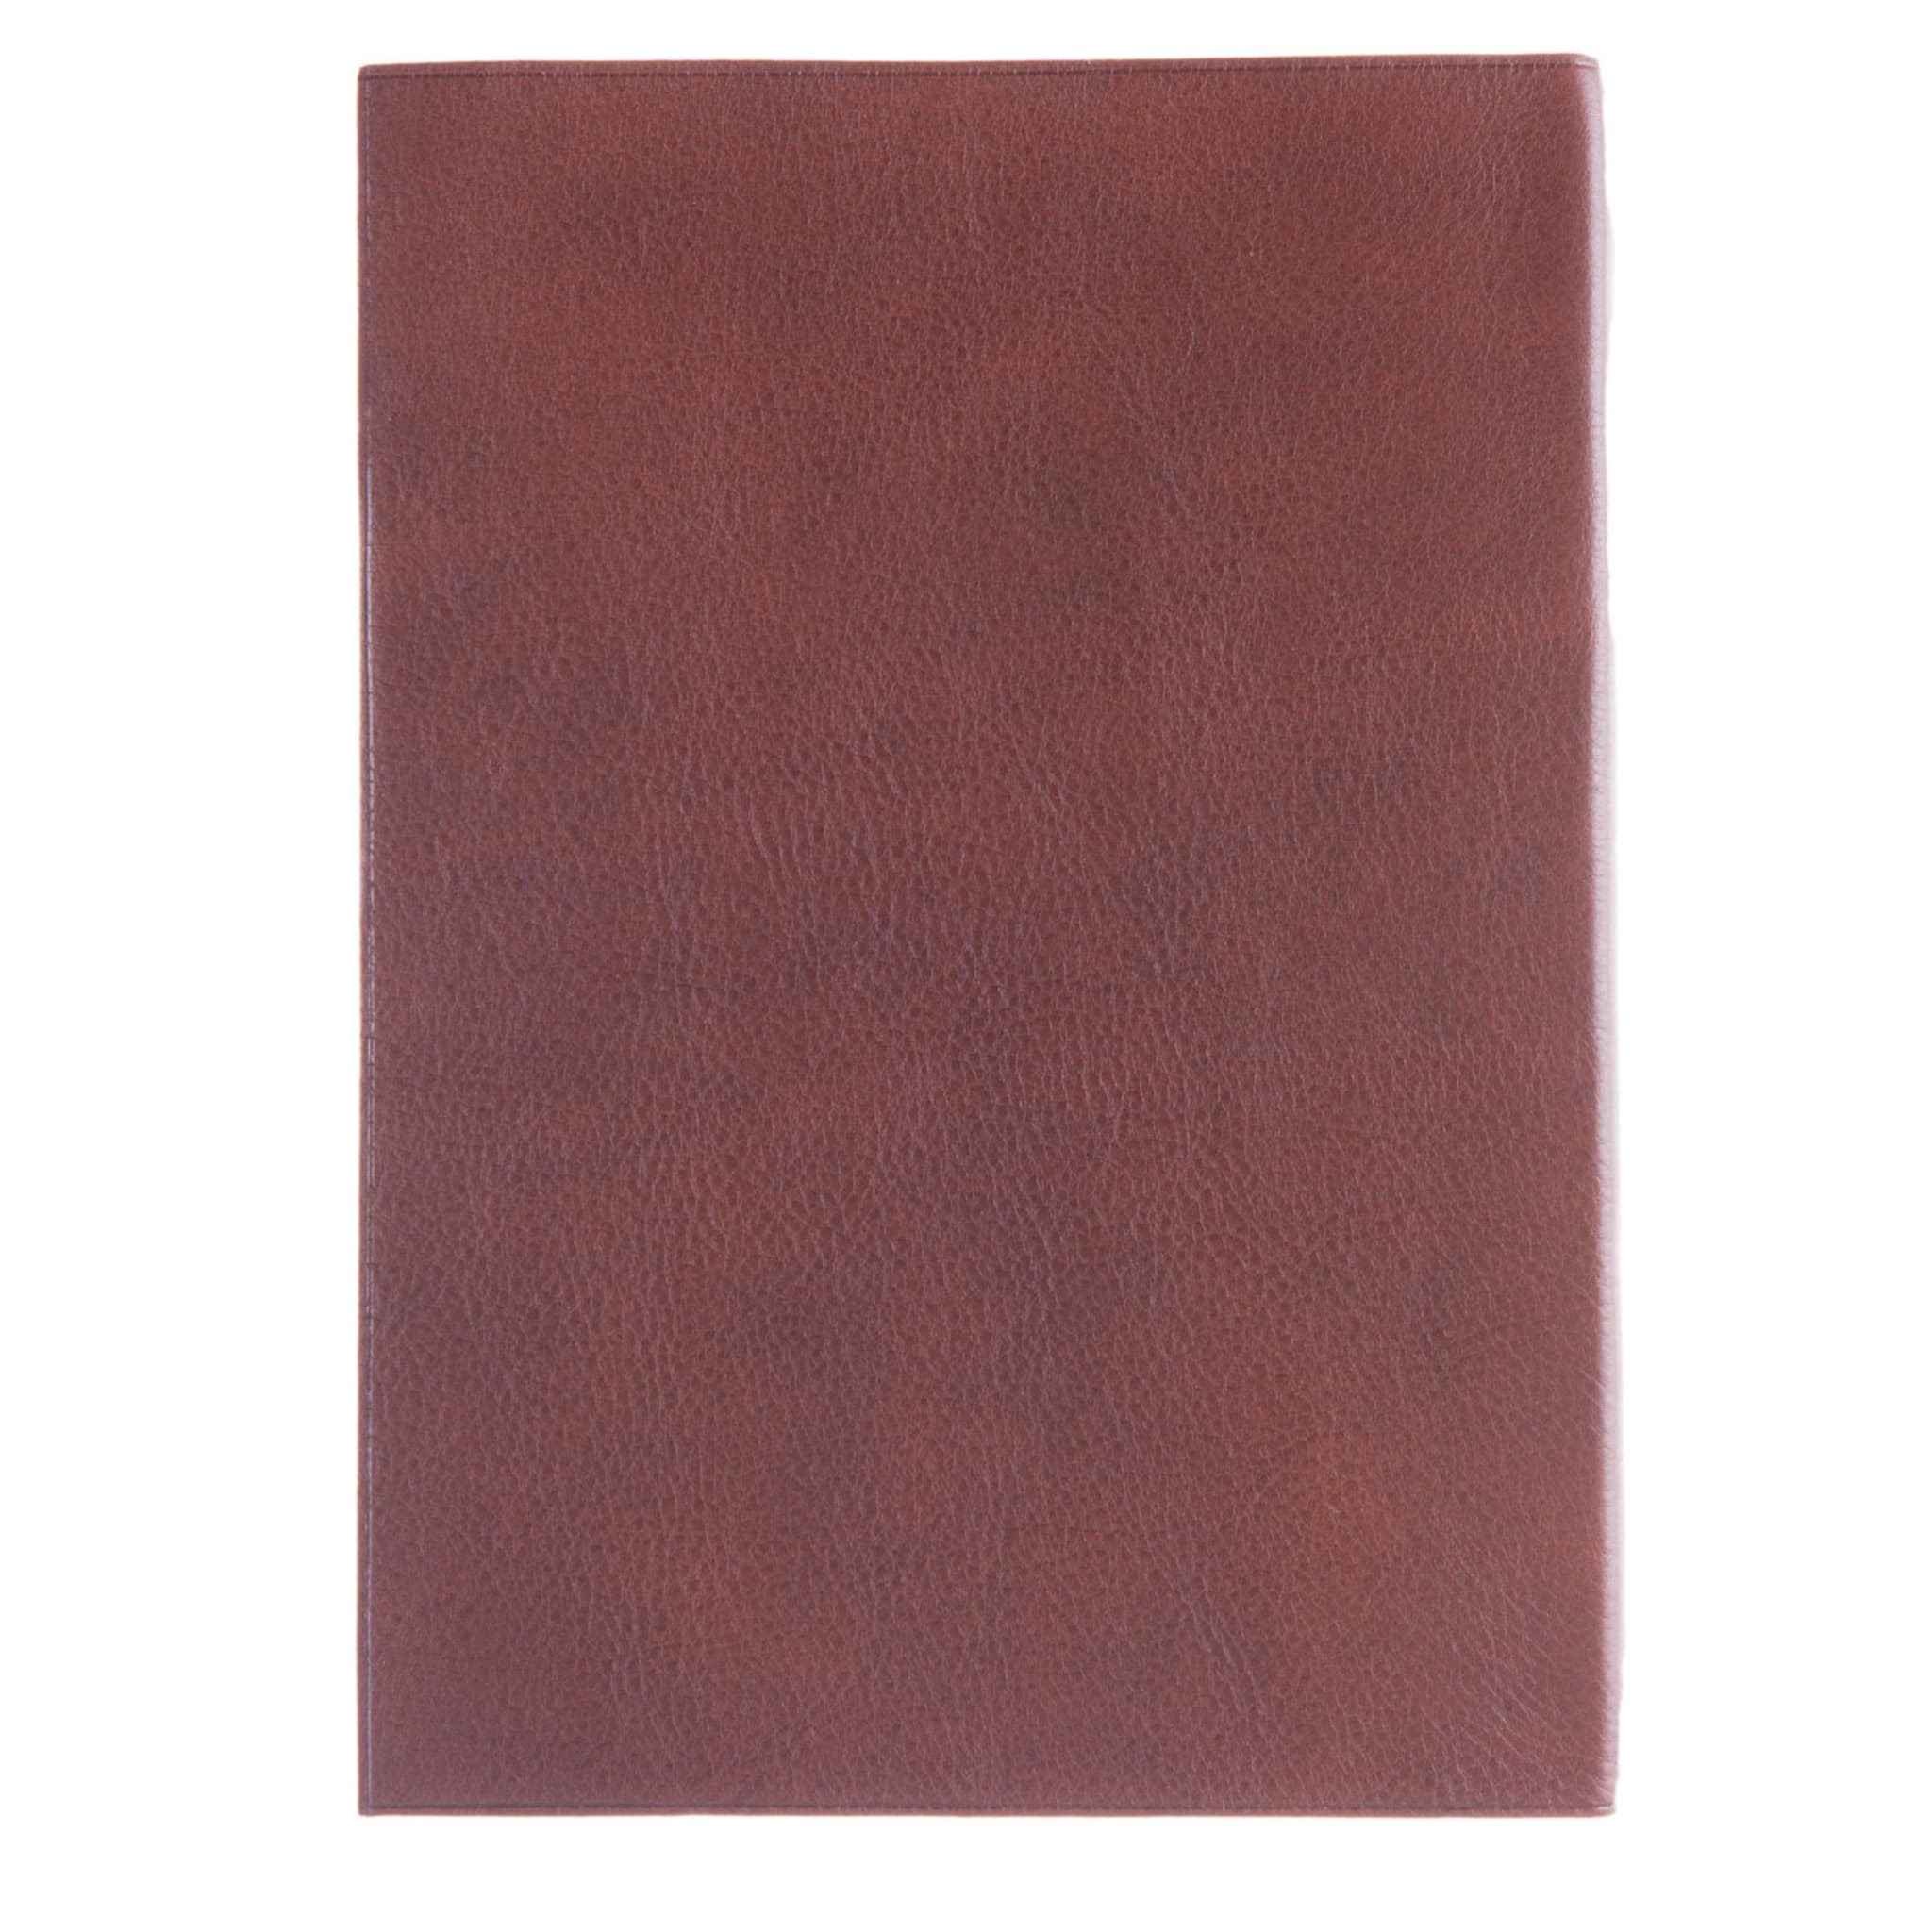 Cuaderno de cuero marrón - Vista alternativa 1